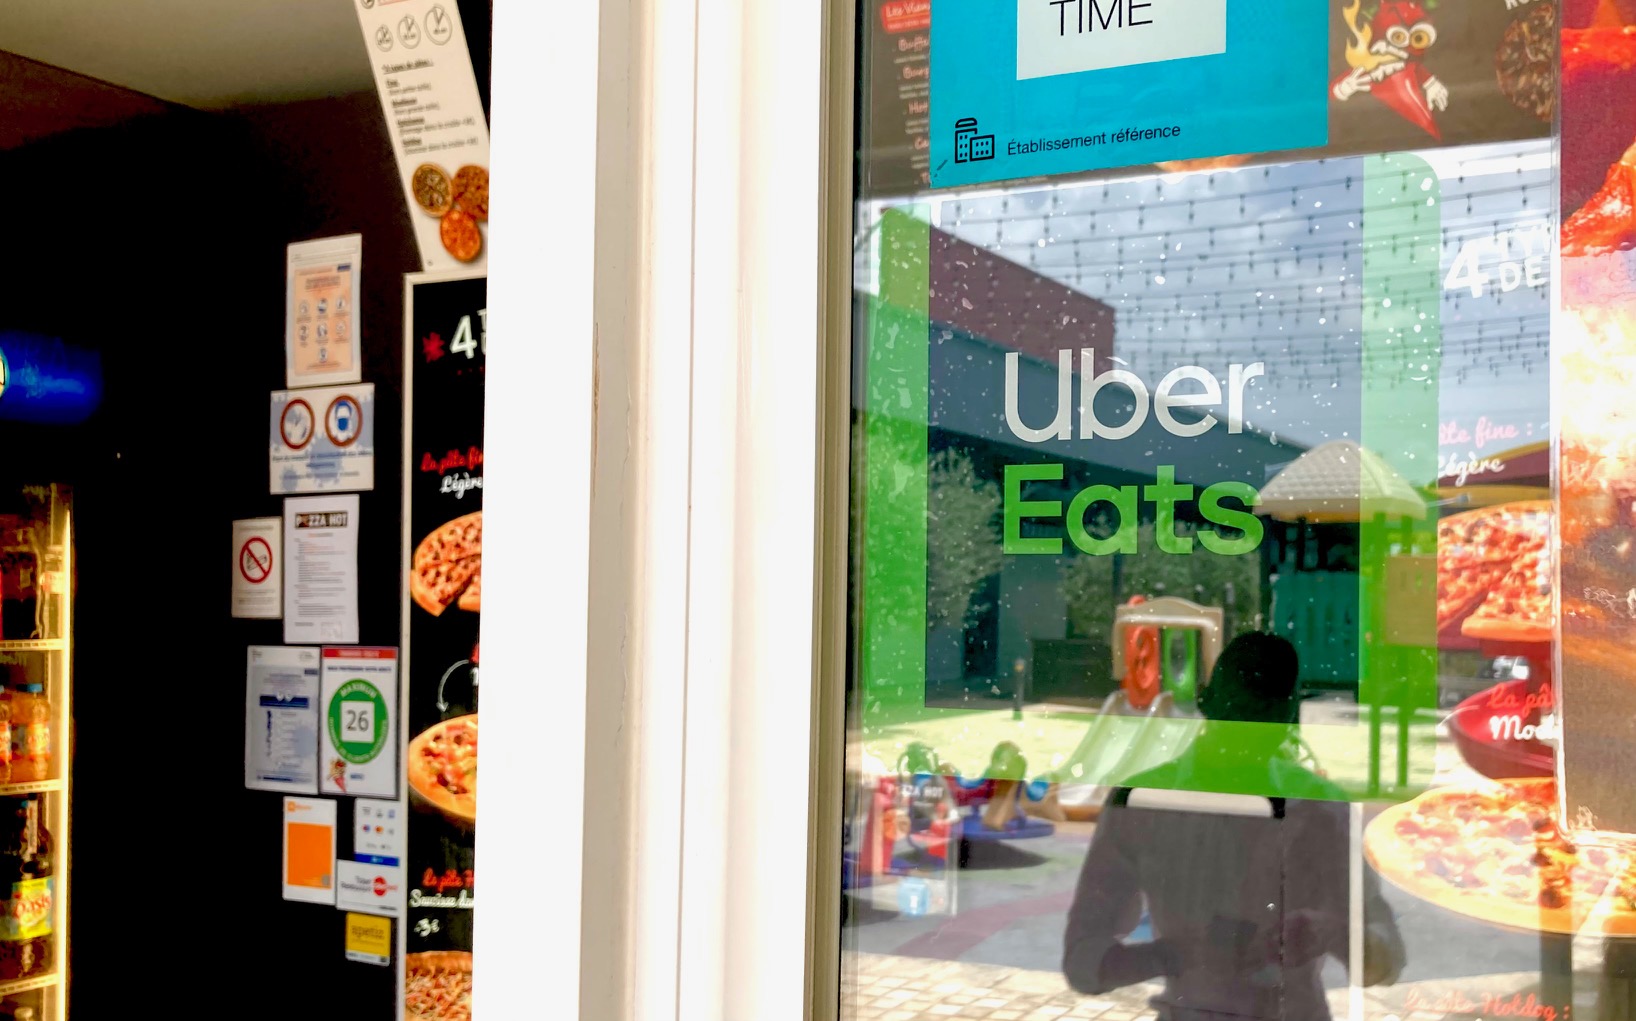     Débuts timides pour Uber Eats en Guadeloupe

